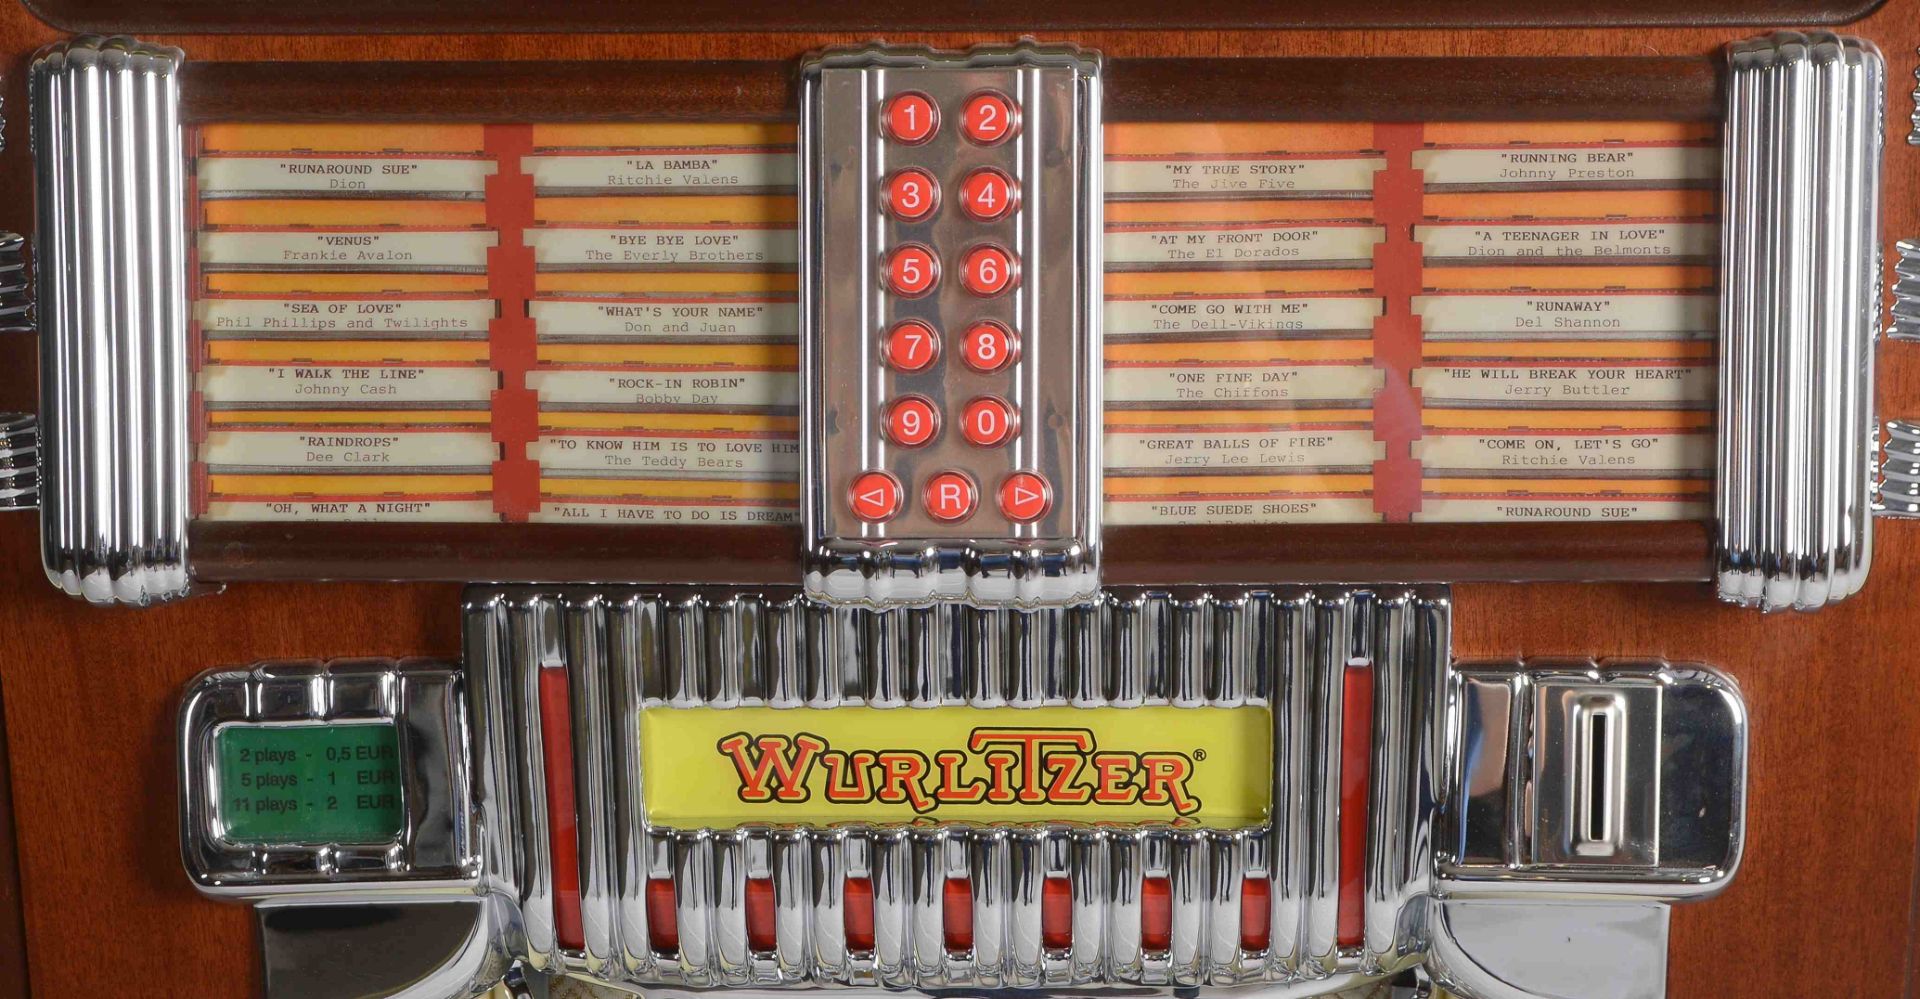 Jukebox, Wurlitzer, -One more Time 1015-, dazu Paar Lautsprecher, anbei Tasche mit diversen CDs - Image 4 of 6